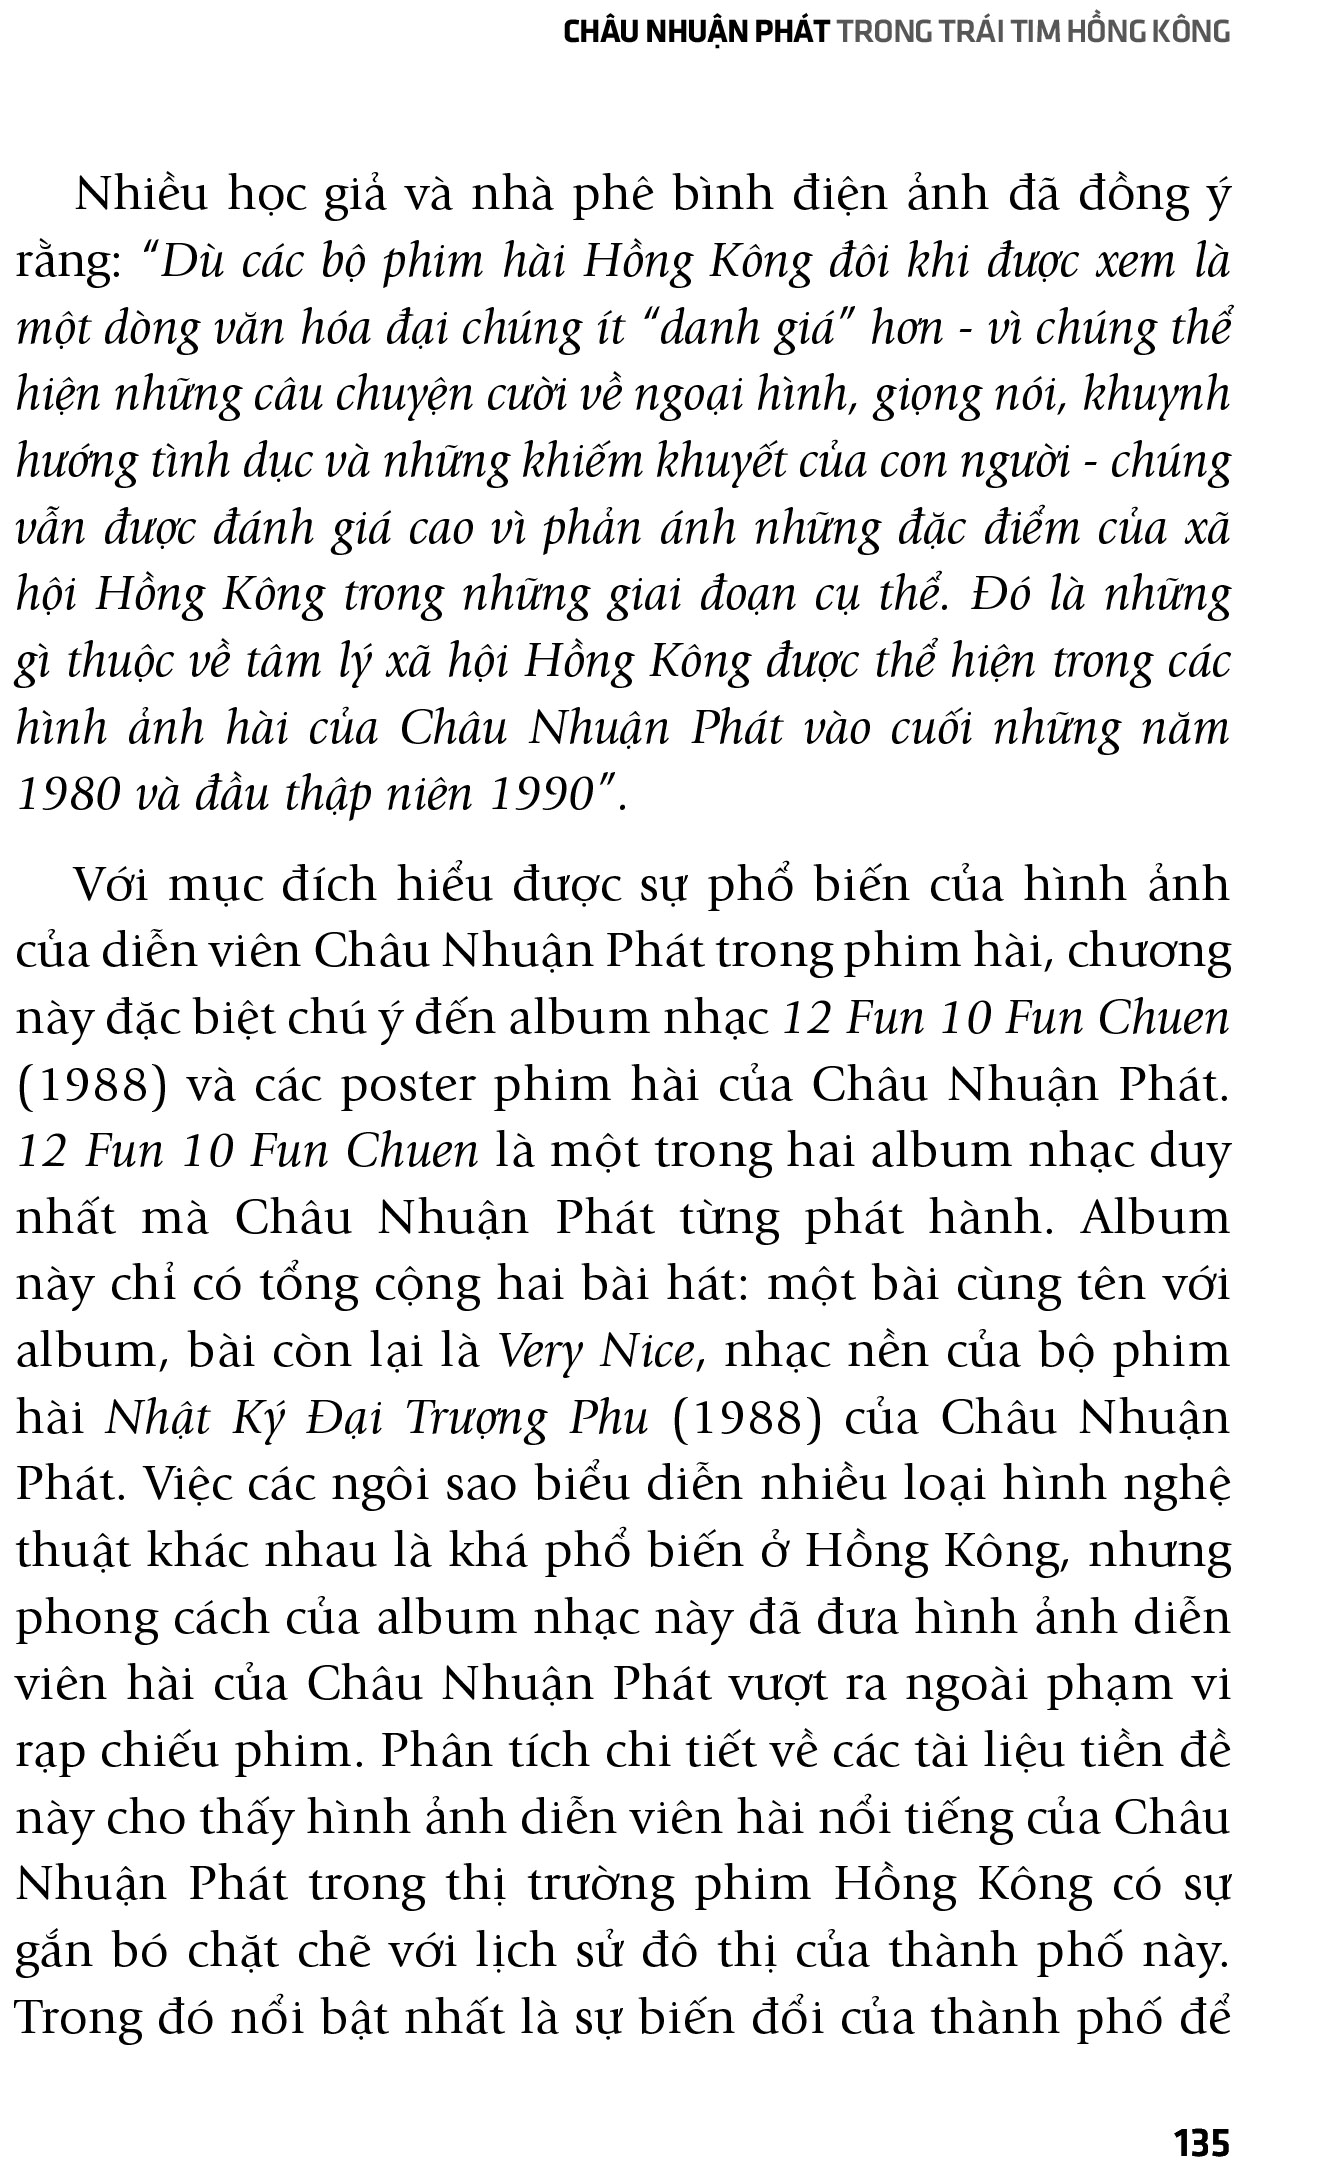 Châu Nhuận Phát - Đại Hiệp Hồng Kông PDF